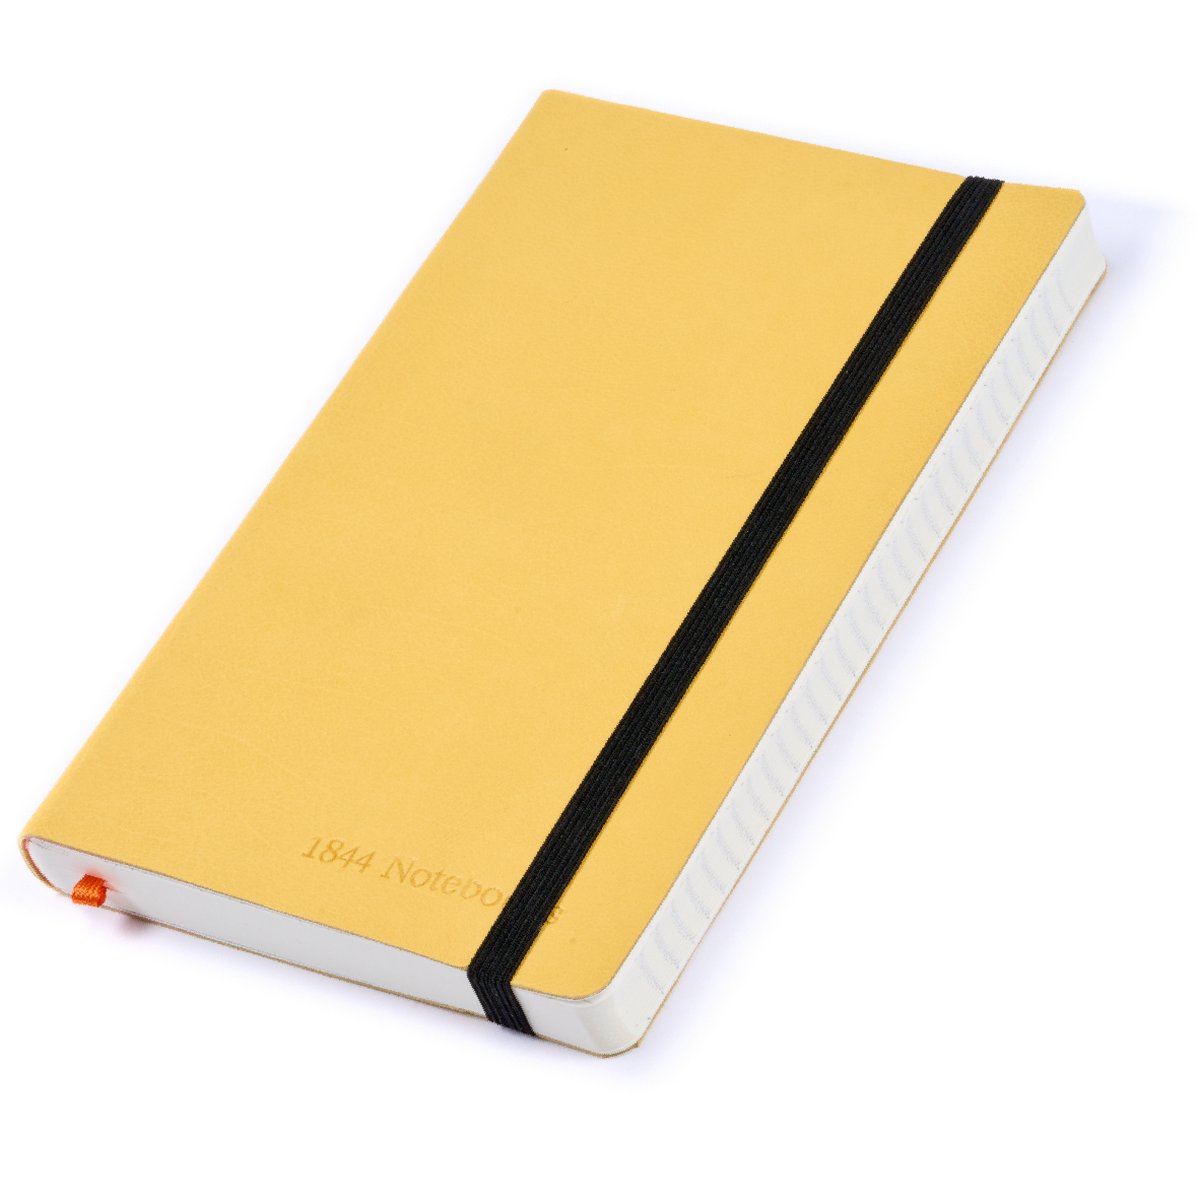 Notitieboek - Notebook A5 - Moederdag cadeau - Cadeau voor man - Notitieboekje - Handgemaakt van leer - Schrijfblok - Notebook - Notitieblok - Daffodil Yellow - 1844 Notebooks